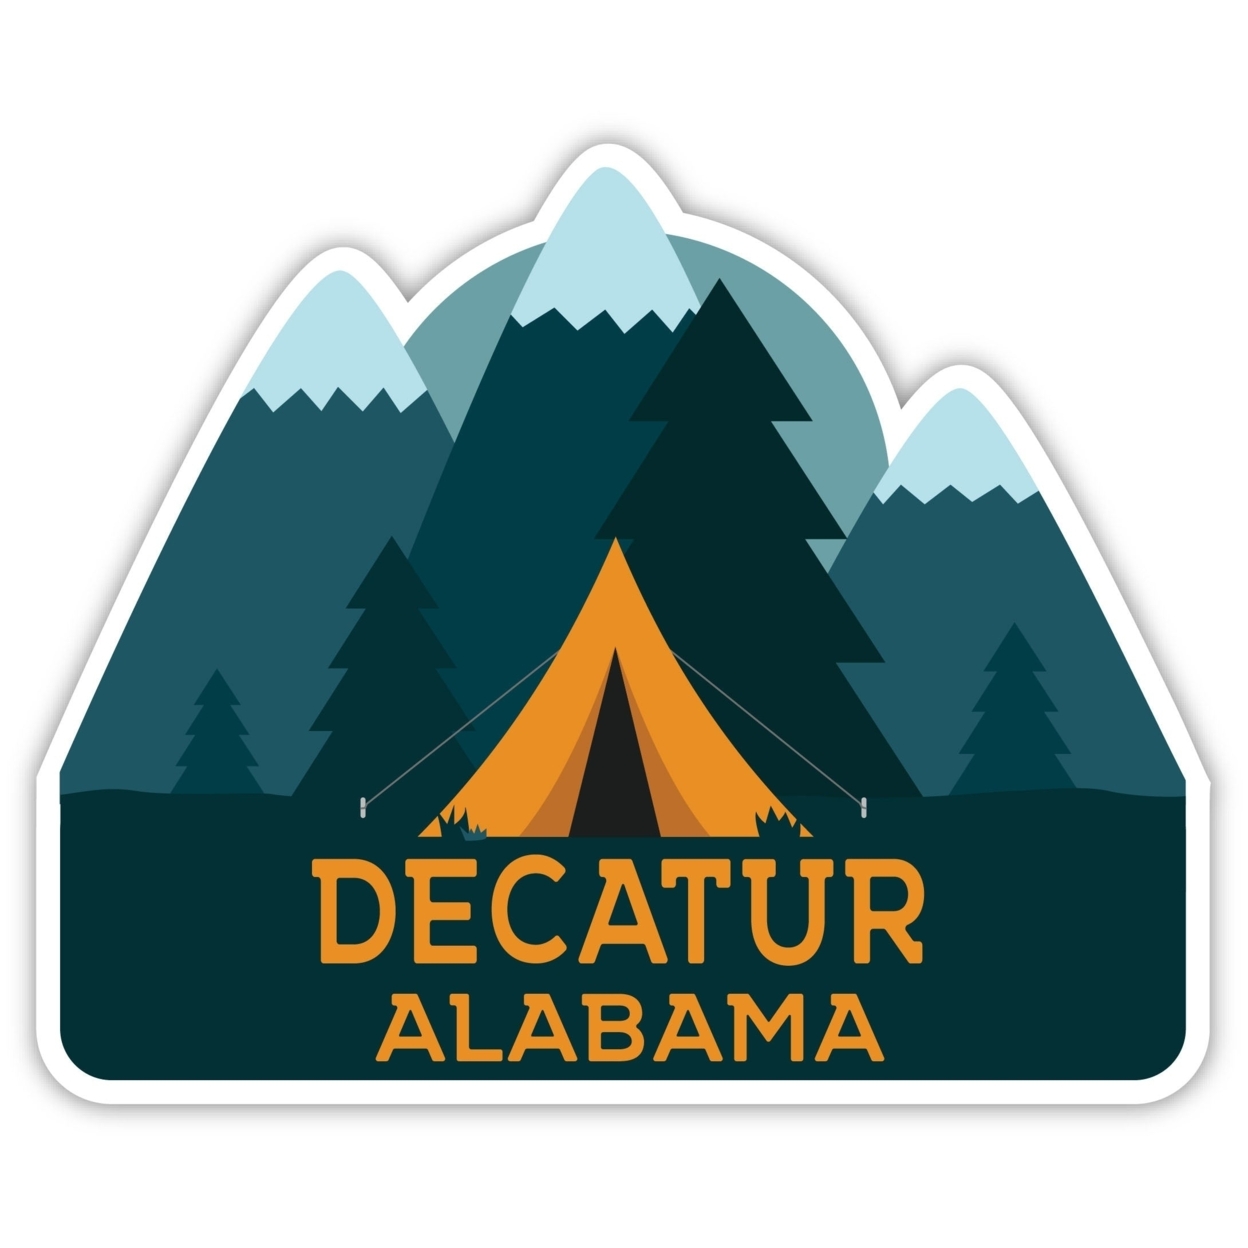 Decatur Alabama Souvenir Decorative Stickers (Choose Theme And Size) - Single Unit, 8-Inch, Tent